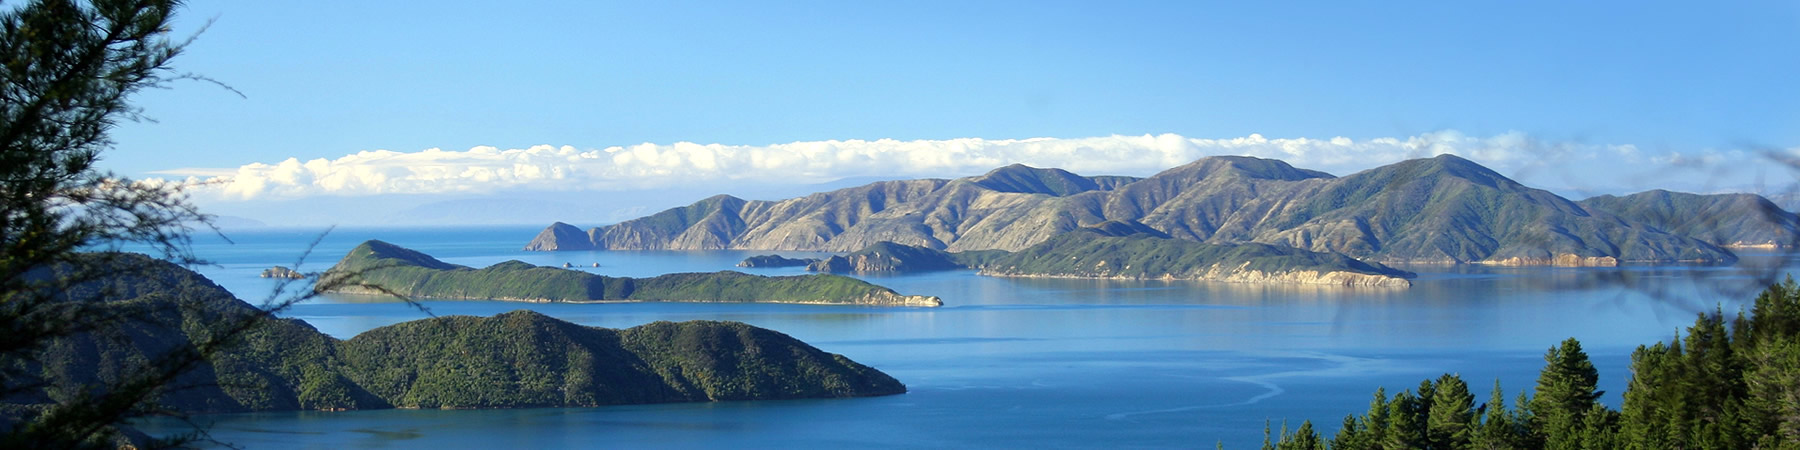 新西兰旅游景点,新西兰景点,新西兰南岛景点,马尔堡水上的士,马尔堡峡湾水上出租车,新西兰水上出租车,皮克顿水上的士,新西兰水上TAXI